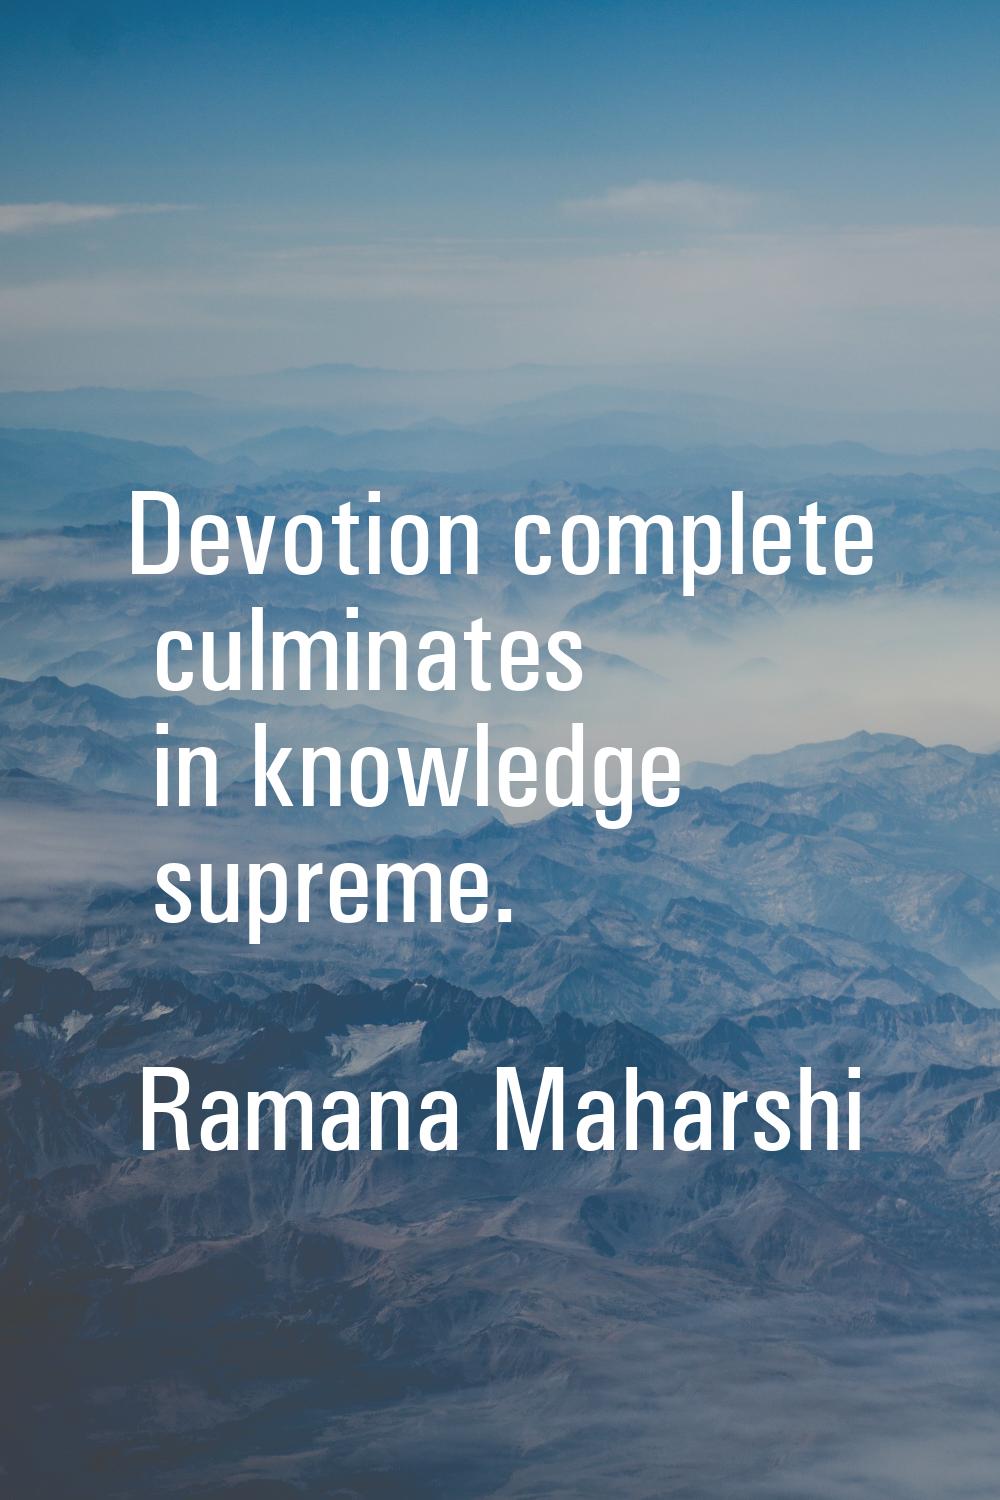 Devotion complete culminates in knowledge supreme.